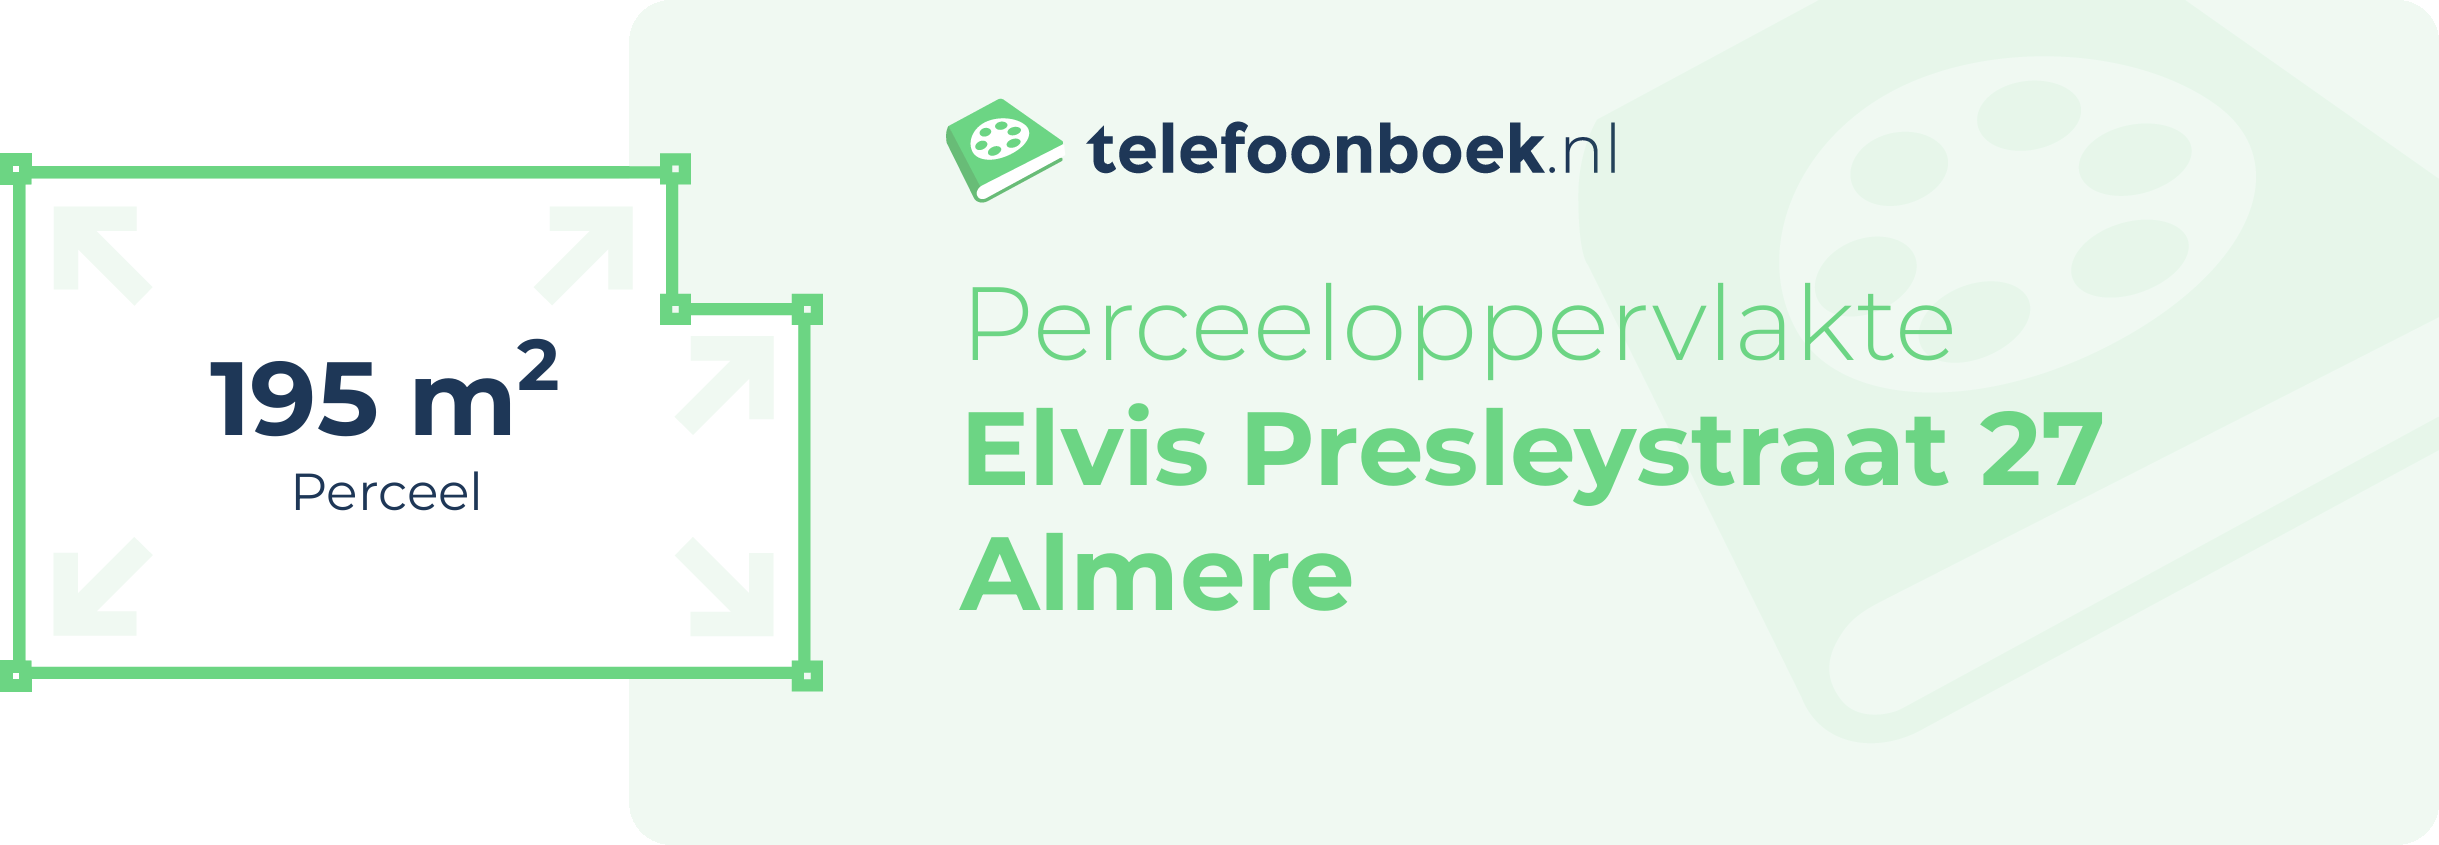 Perceeloppervlakte Elvis Presleystraat 27 Almere